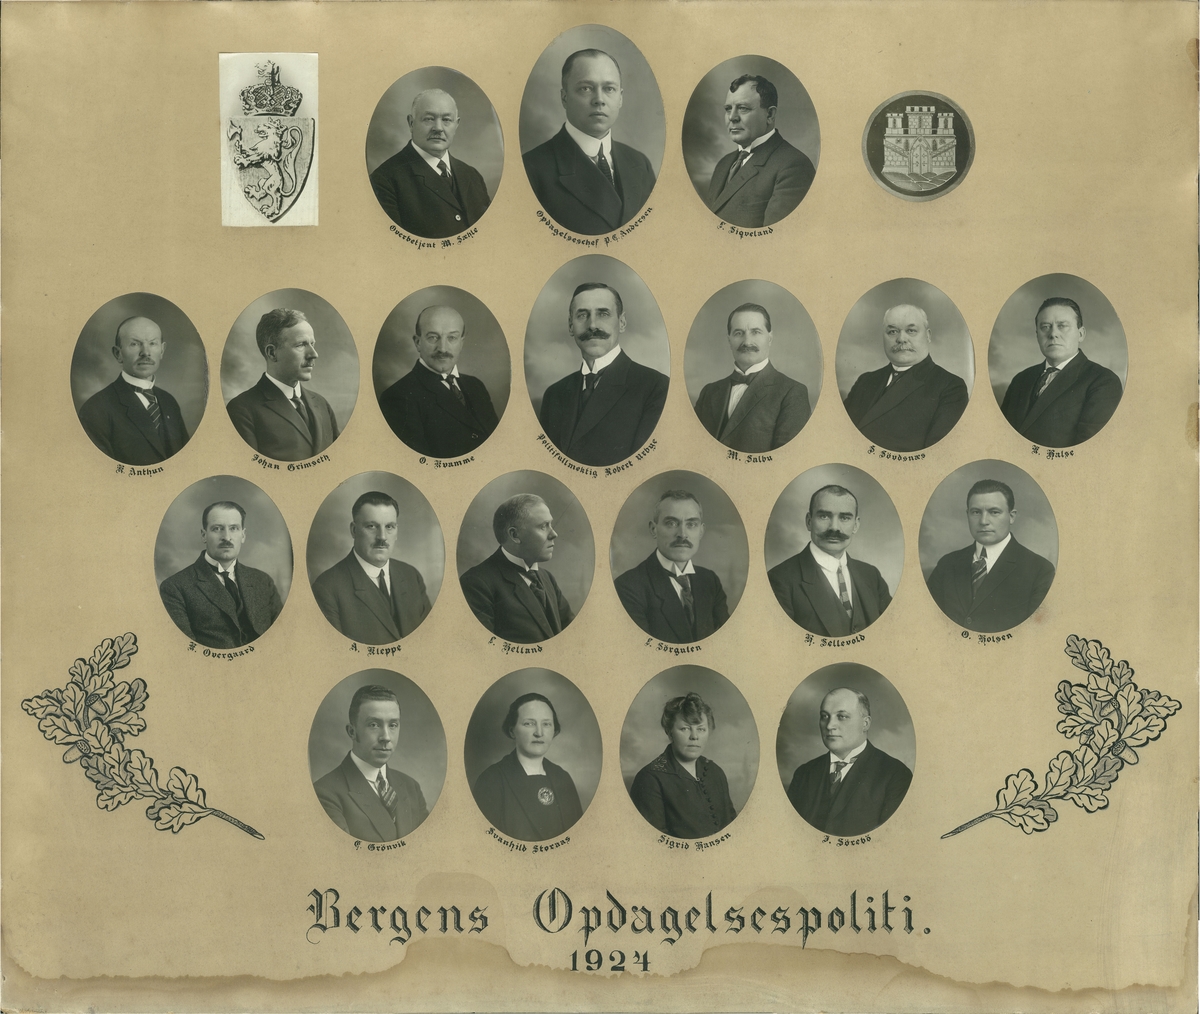 Samling av portretter av de ansatte ved Bergens oppdagelsespoliti fra 1924